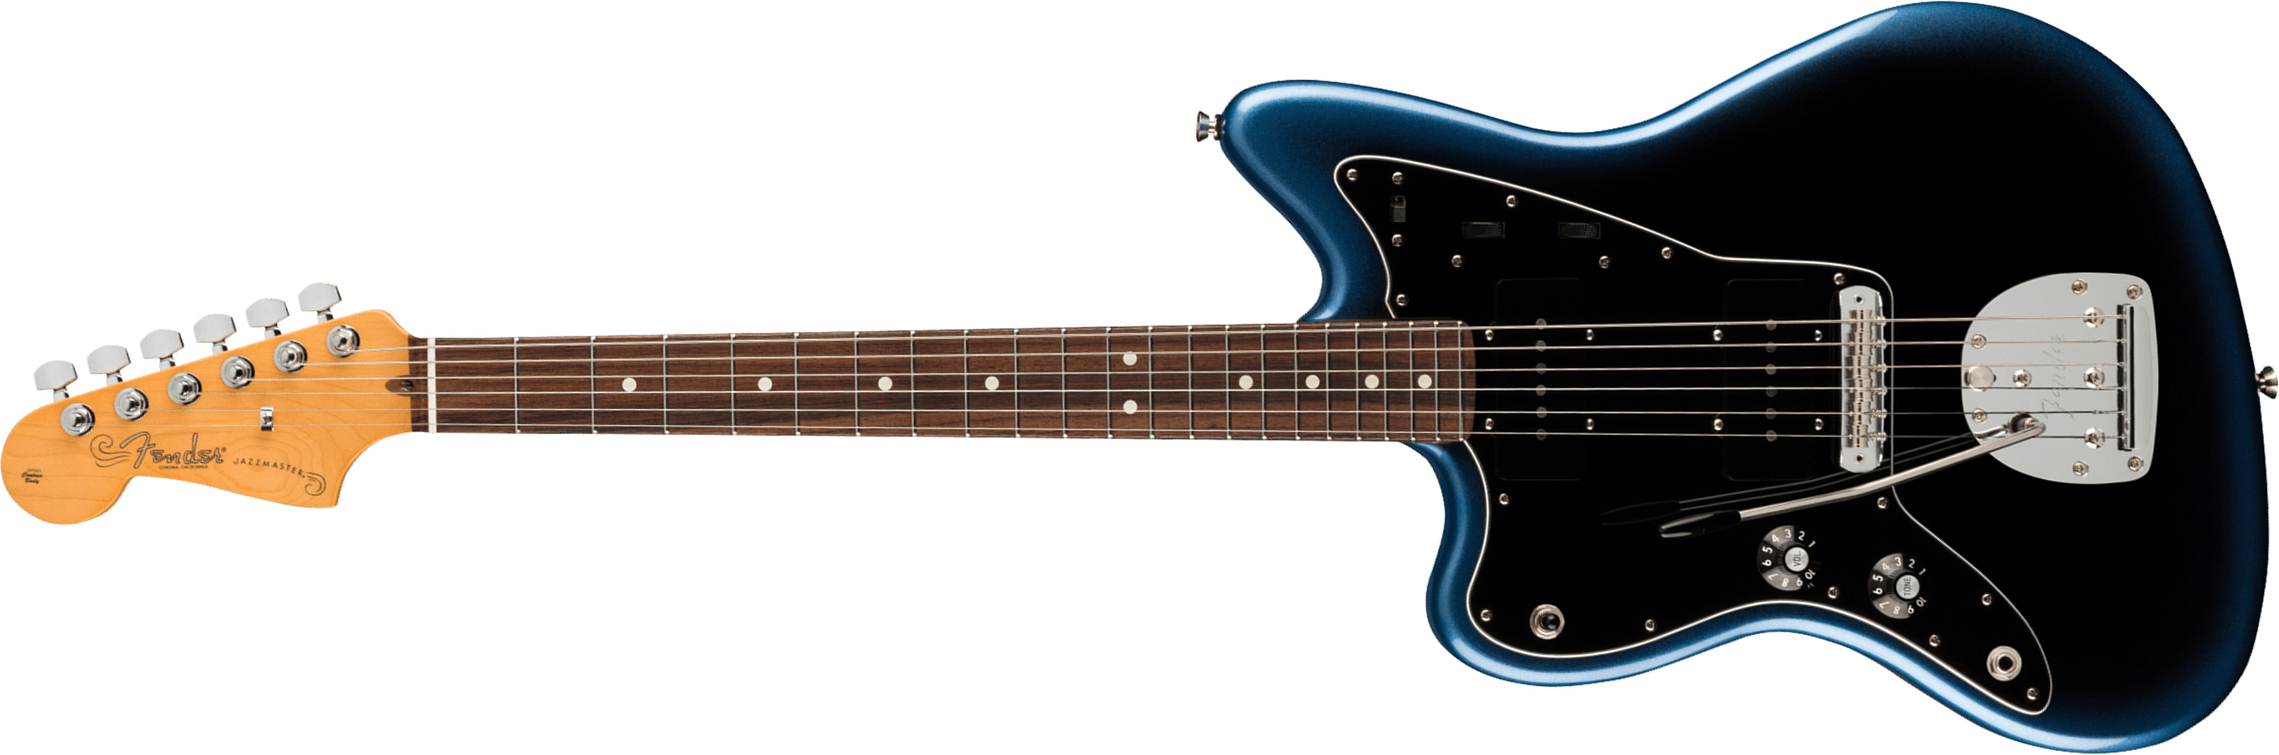 Fender Jazzmaster American Professional Ii Lh Gaucher Usa Rw - Dark Night - Linkshandige elektrische gitaar - Main picture